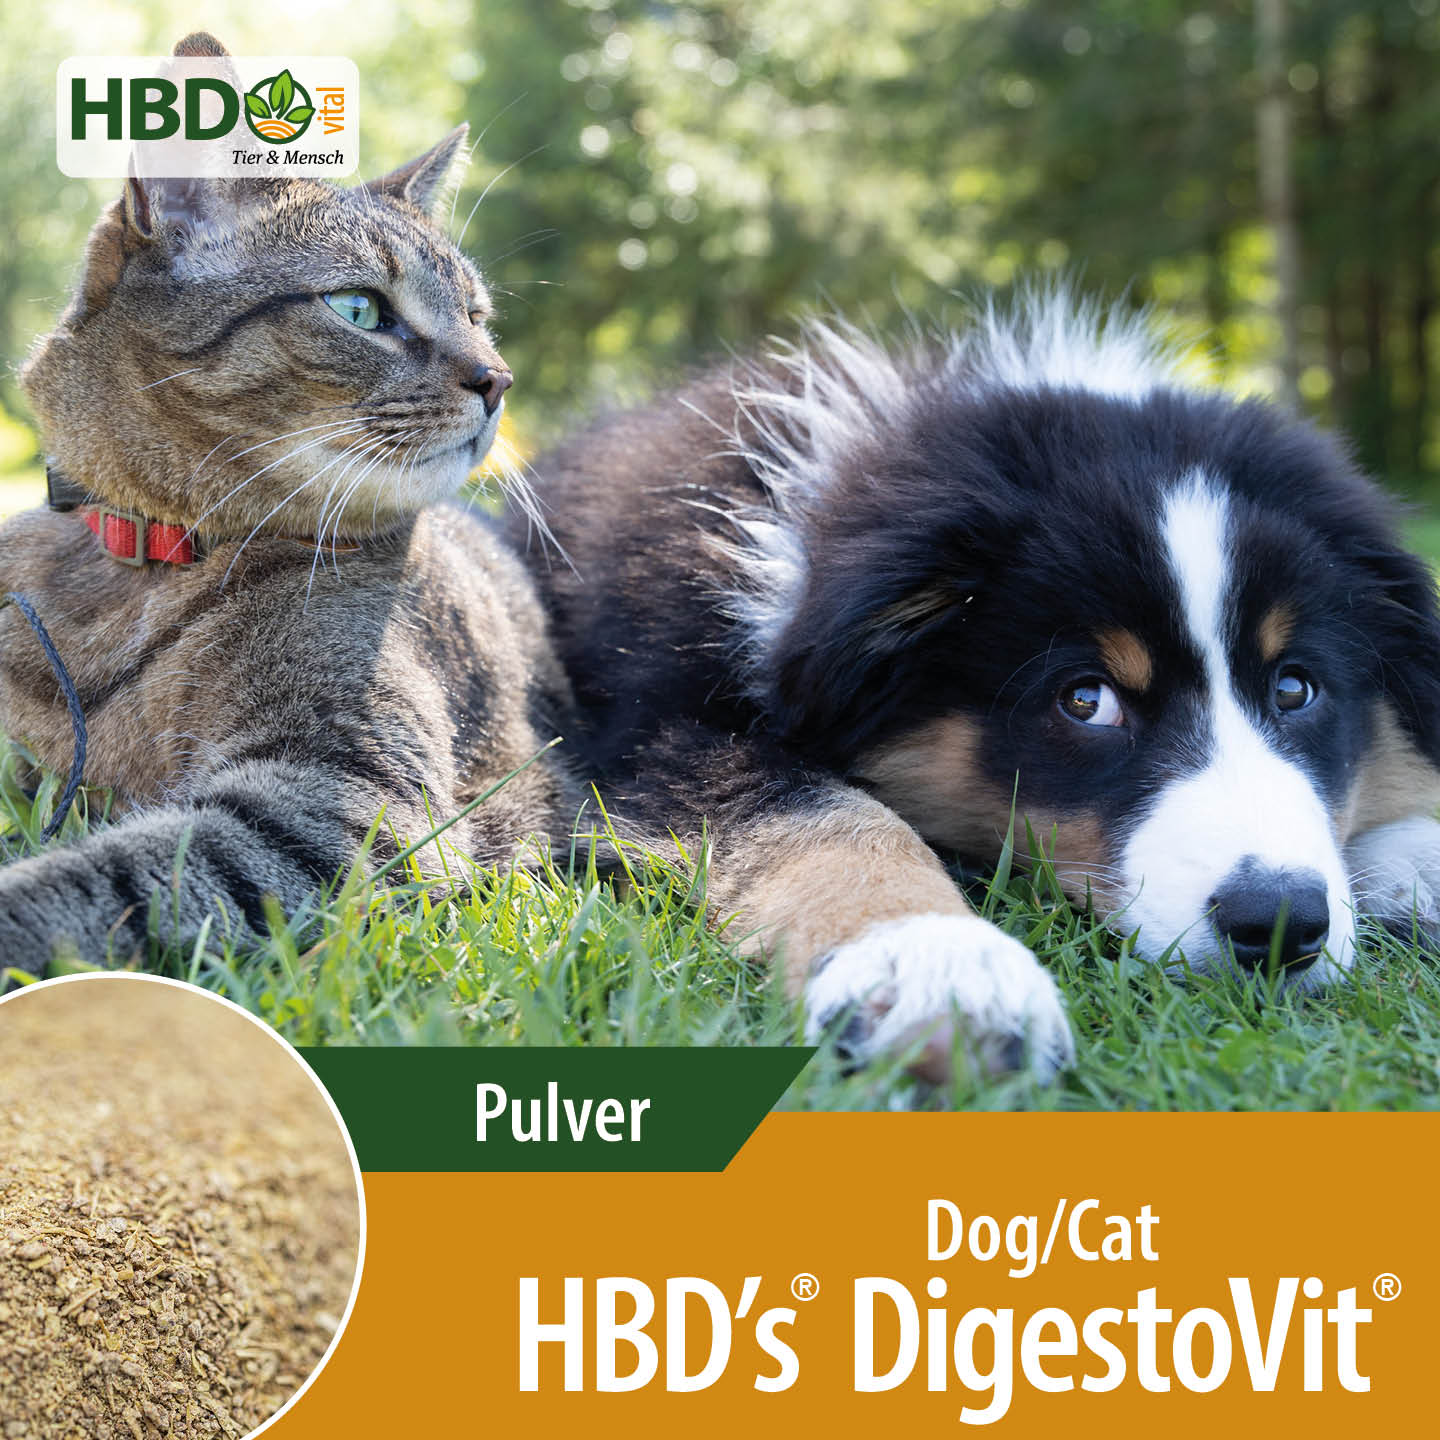 Shopbild für HBD's DigestoVit Dog/Cat - Das Bild zeigt den Produktnamen sowie den Hinweis, dass es sich um ein Pulver handelt. Ein schwarz/weiß/brauner Hund und eine getigerte Katze sind zu sehen, was das Produkt visuell anspreche